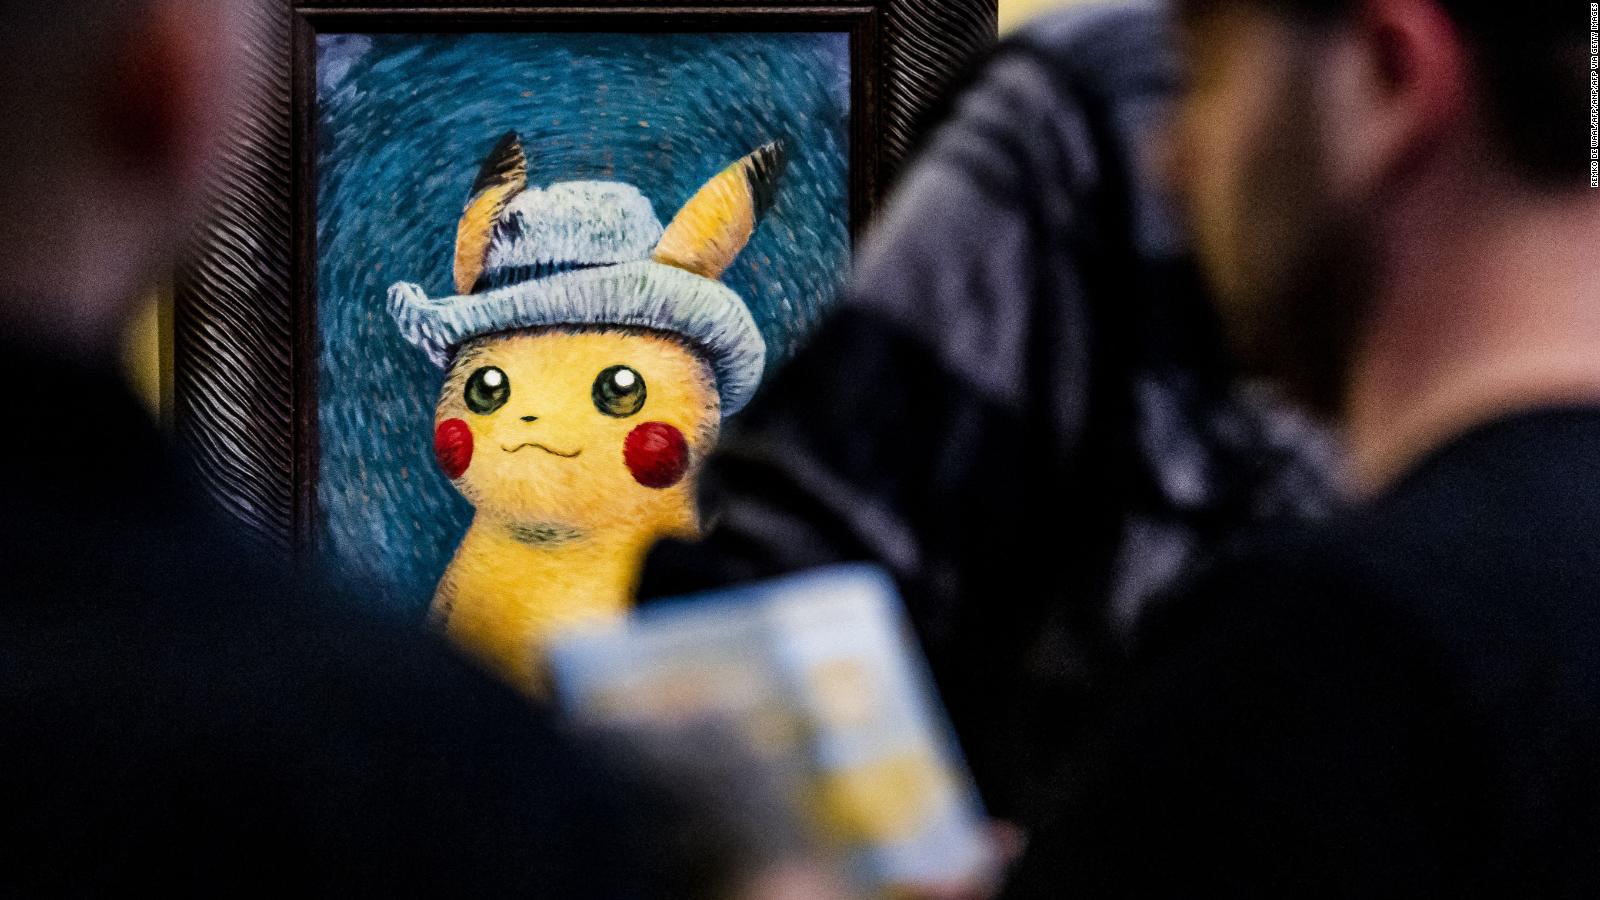 “El arte de Van Gogh se mezcla con la magia de Pokémon en una exhibición especial”